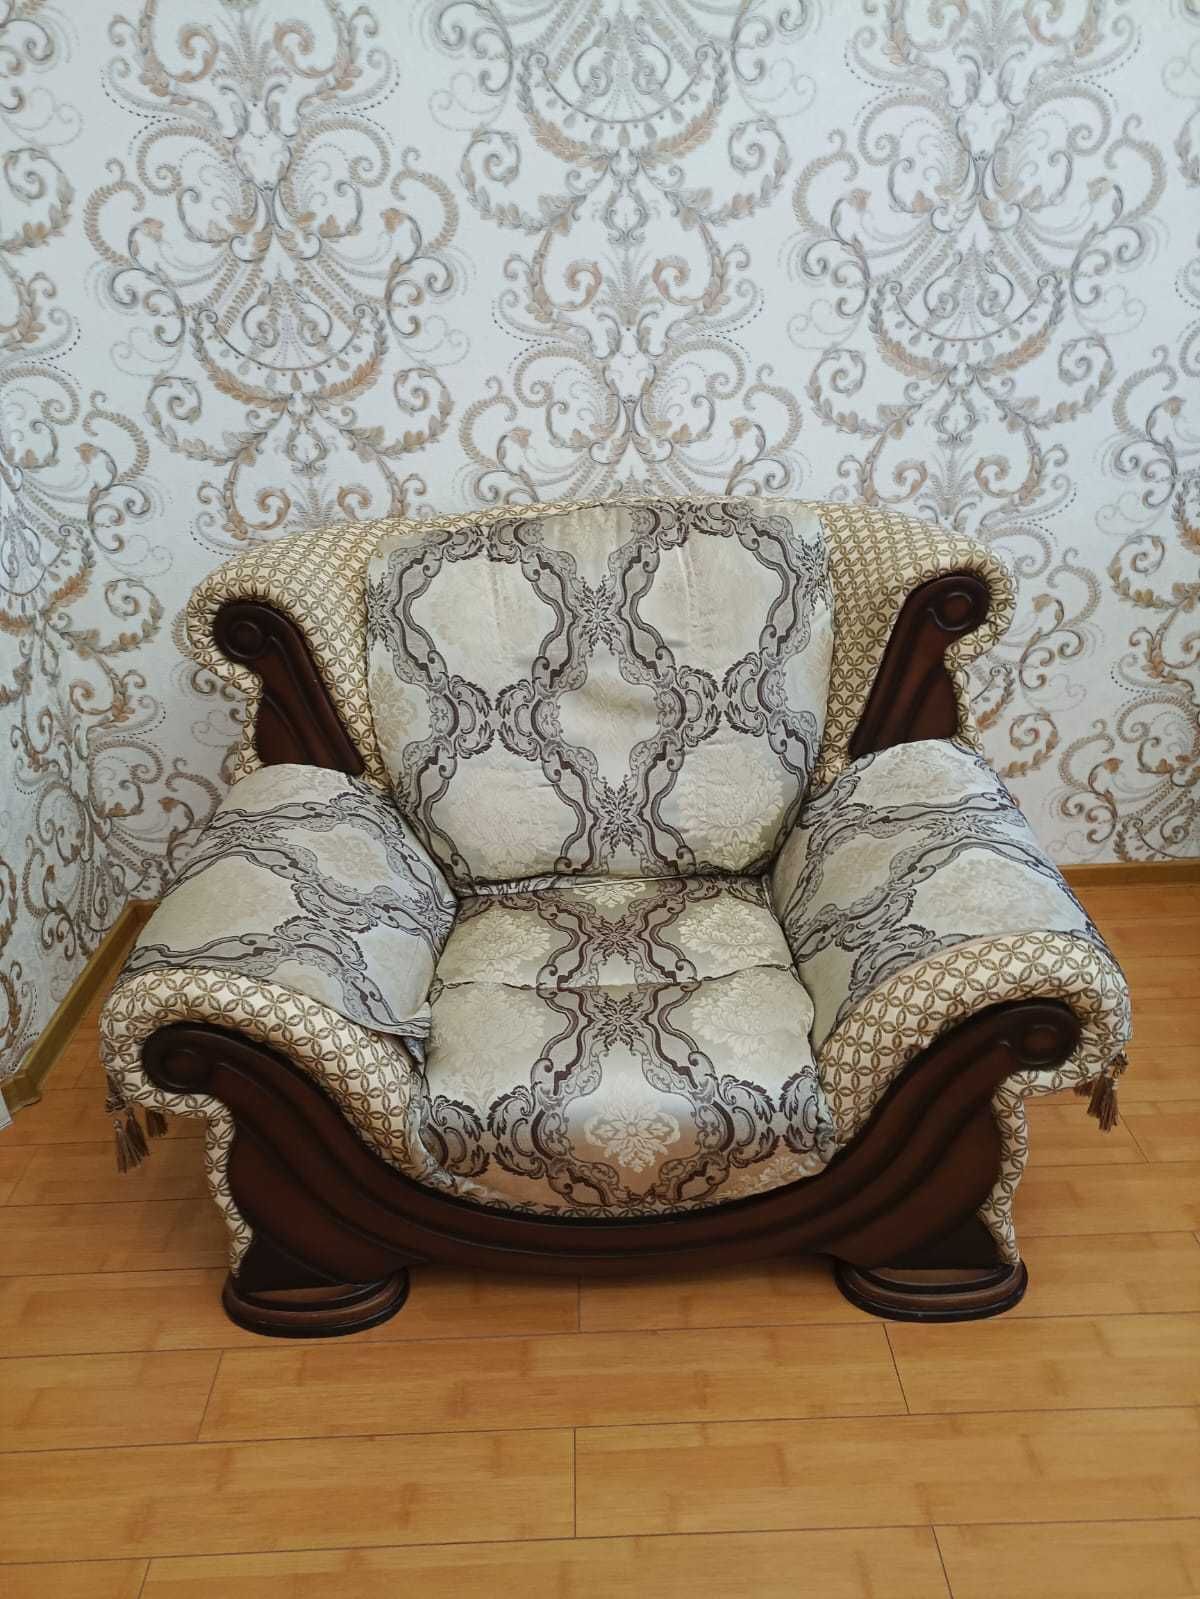 Продам мягкий уголок (модель "Султана", 3+2+1) и кресло-качалку